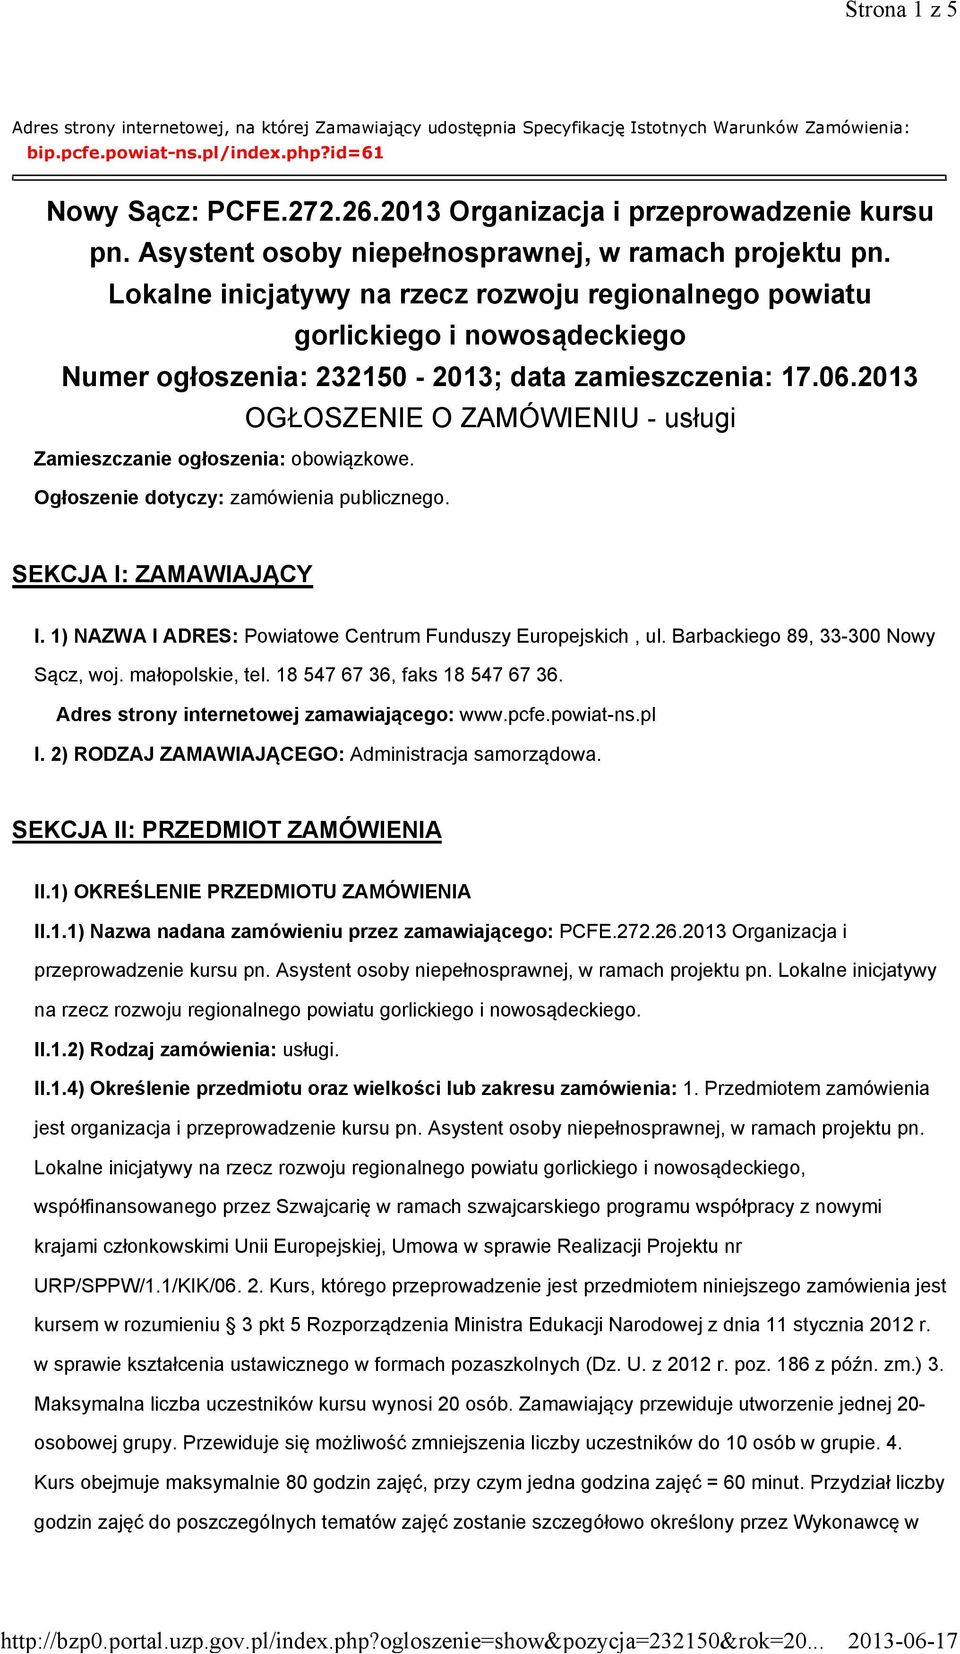 Lokalne inicjatywy na rzecz rozwoju regionalnego powiatu gorlickiego i nowosądeckiego Numer ogłoszenia: 232150-2013; data zamieszczenia: 17.06.